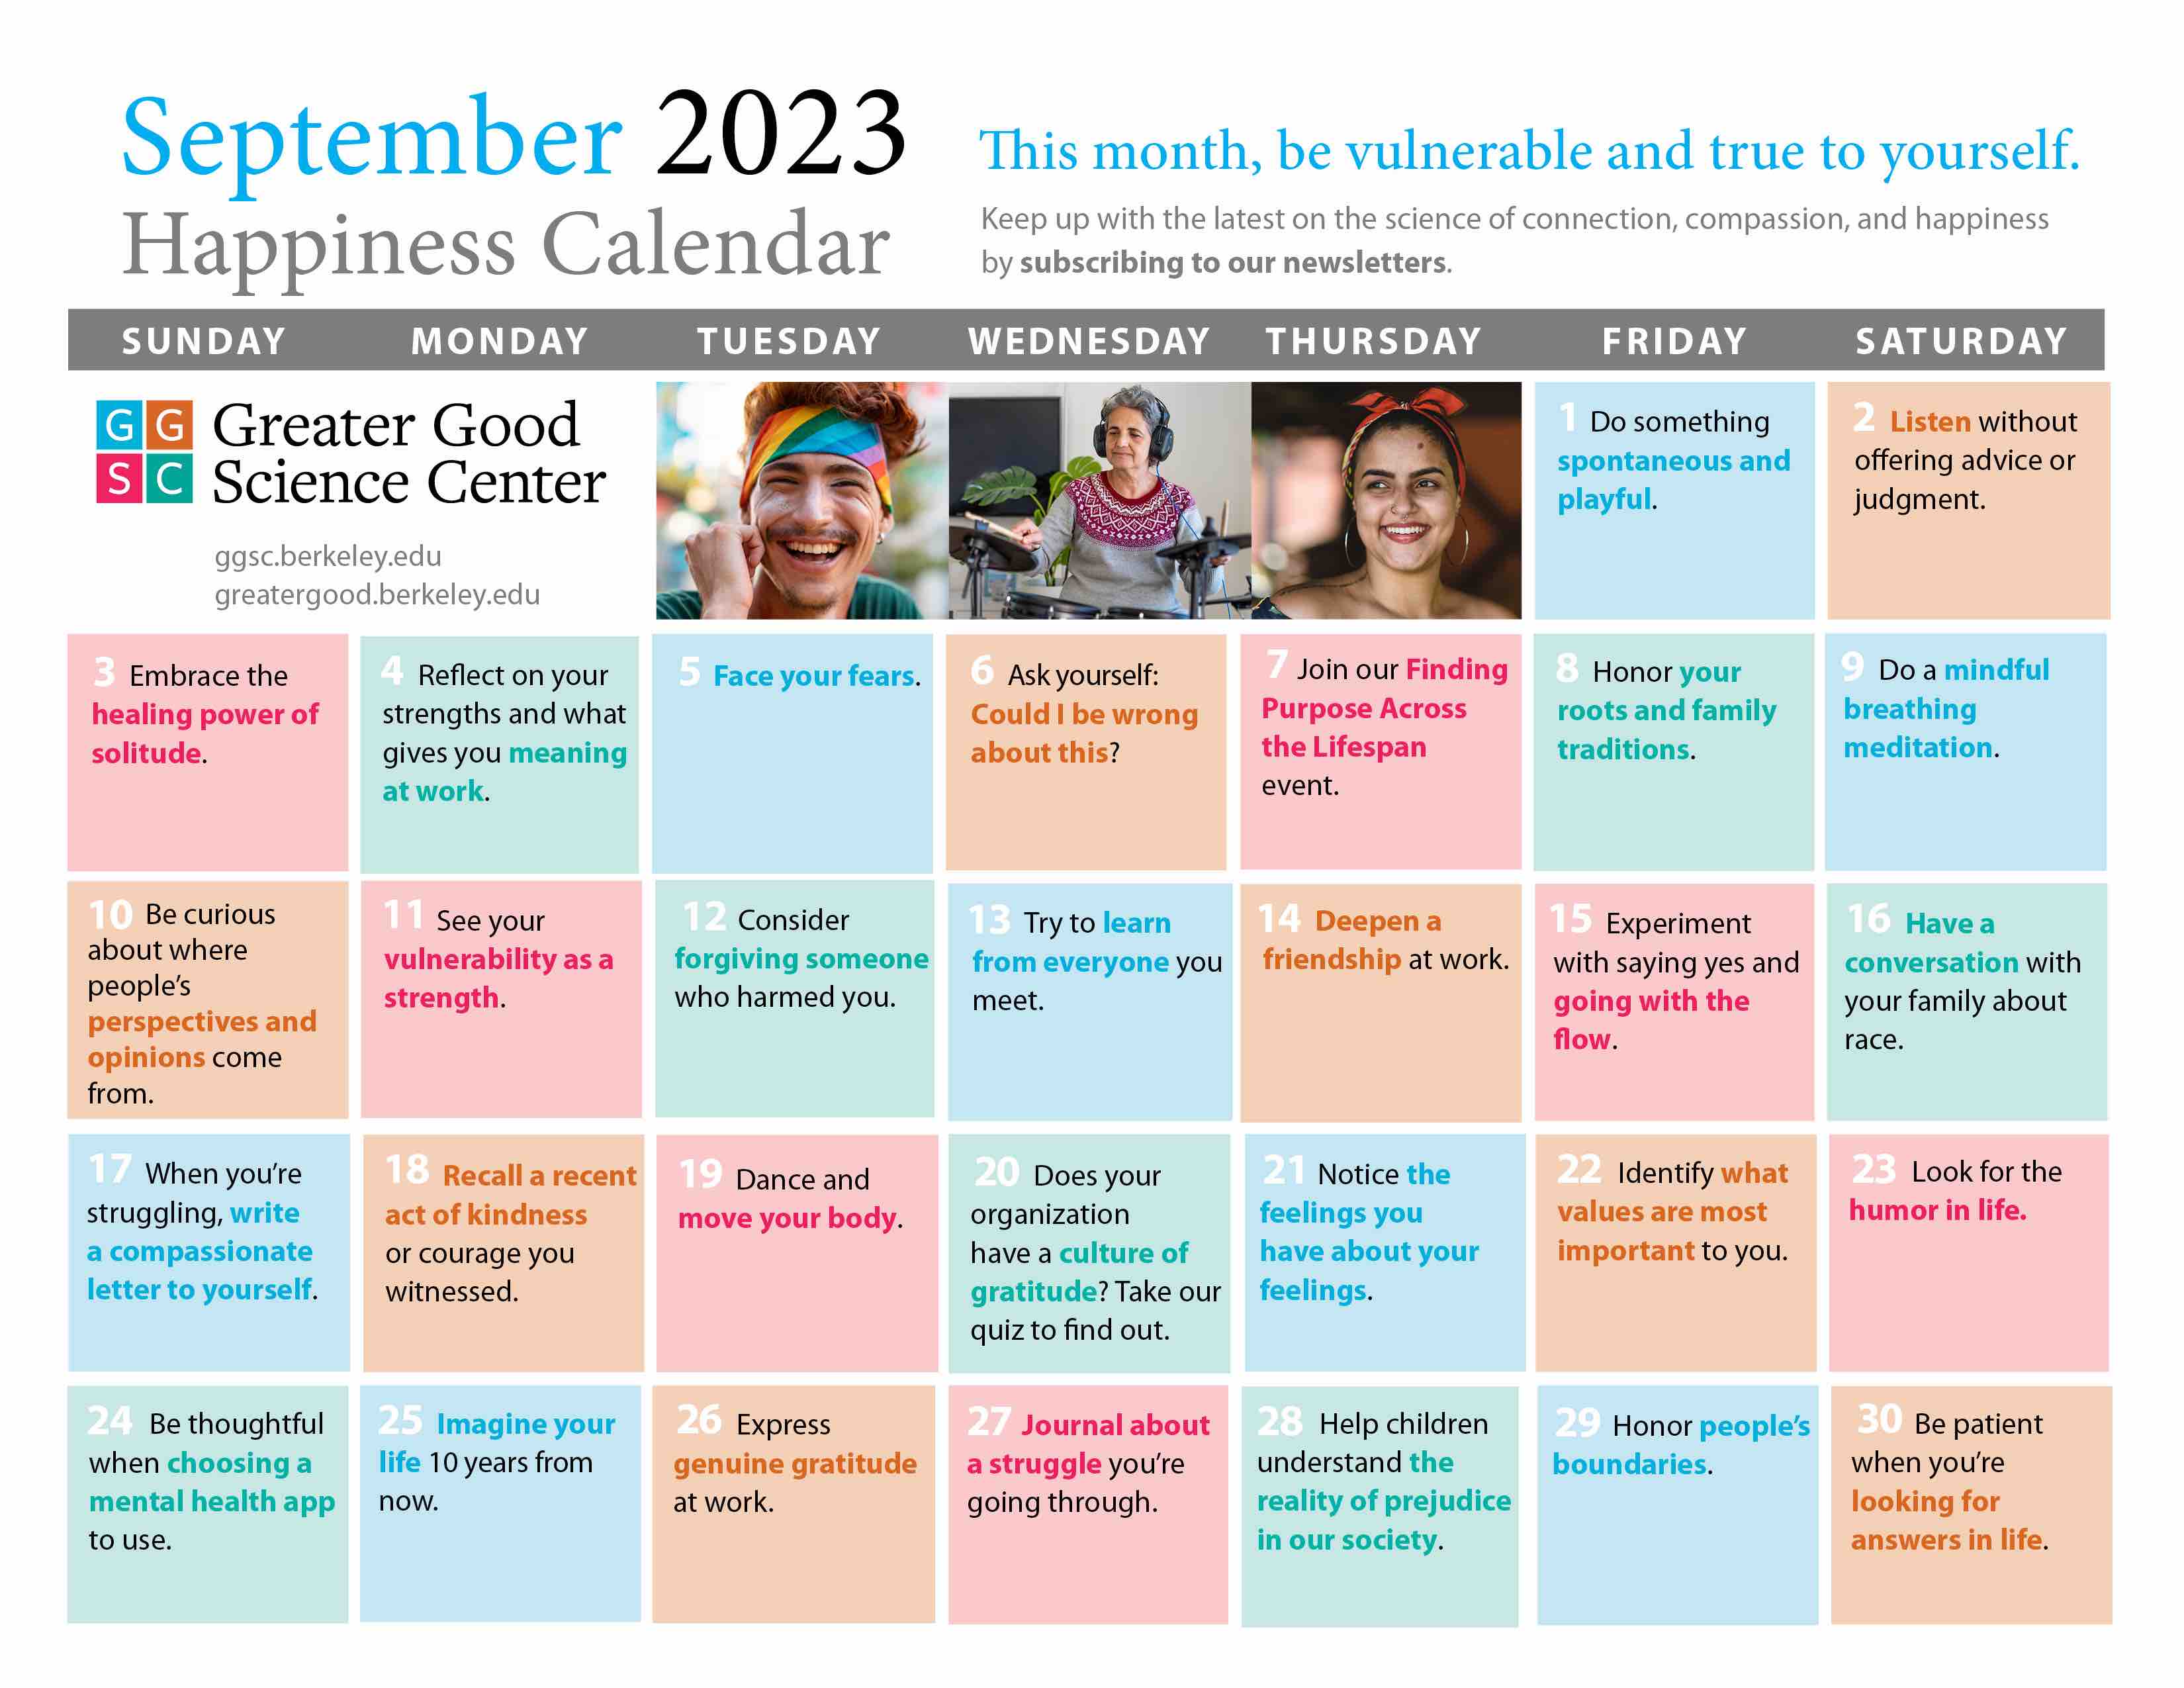 September 2023 happiness calendar